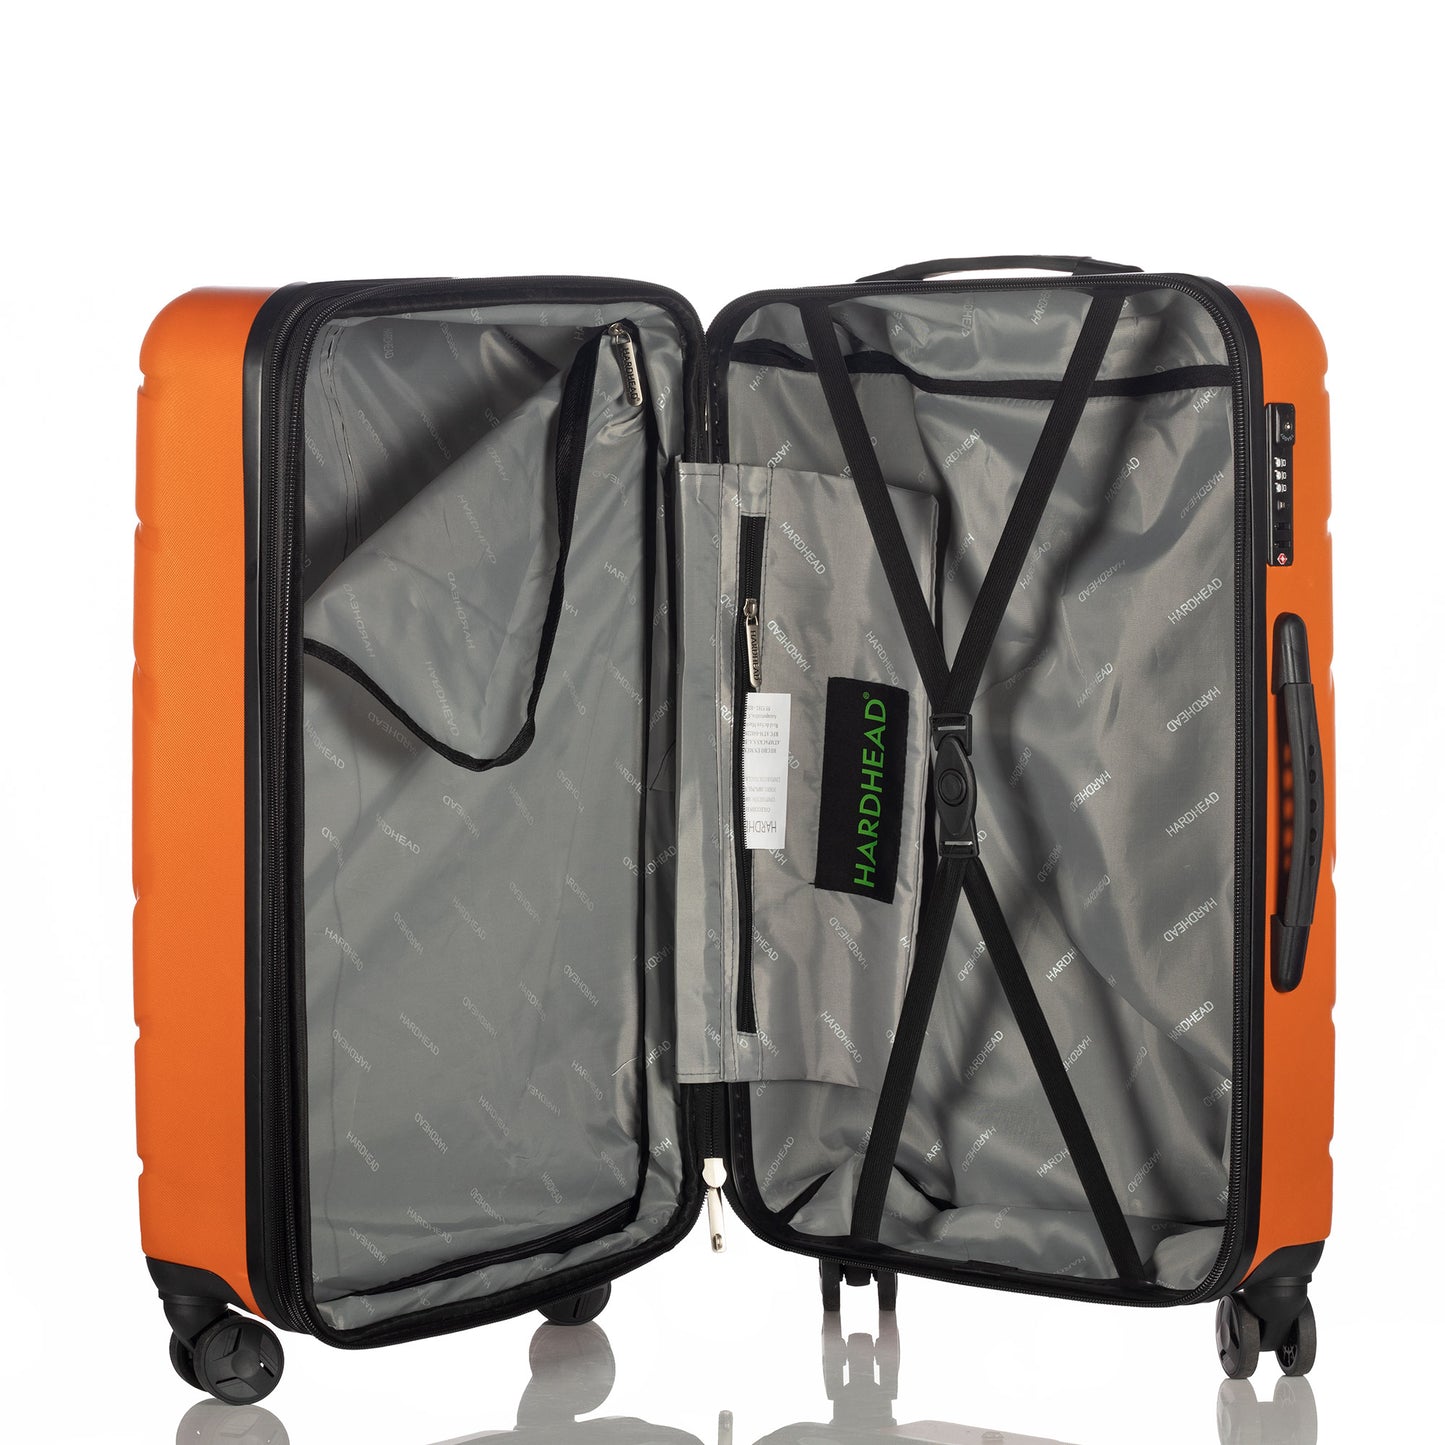 Hardhead Luggage 3 pieces set (20/24/28") Eco Hardside Travel Suitcase with 4 360 Wheels Lock Included, Orange